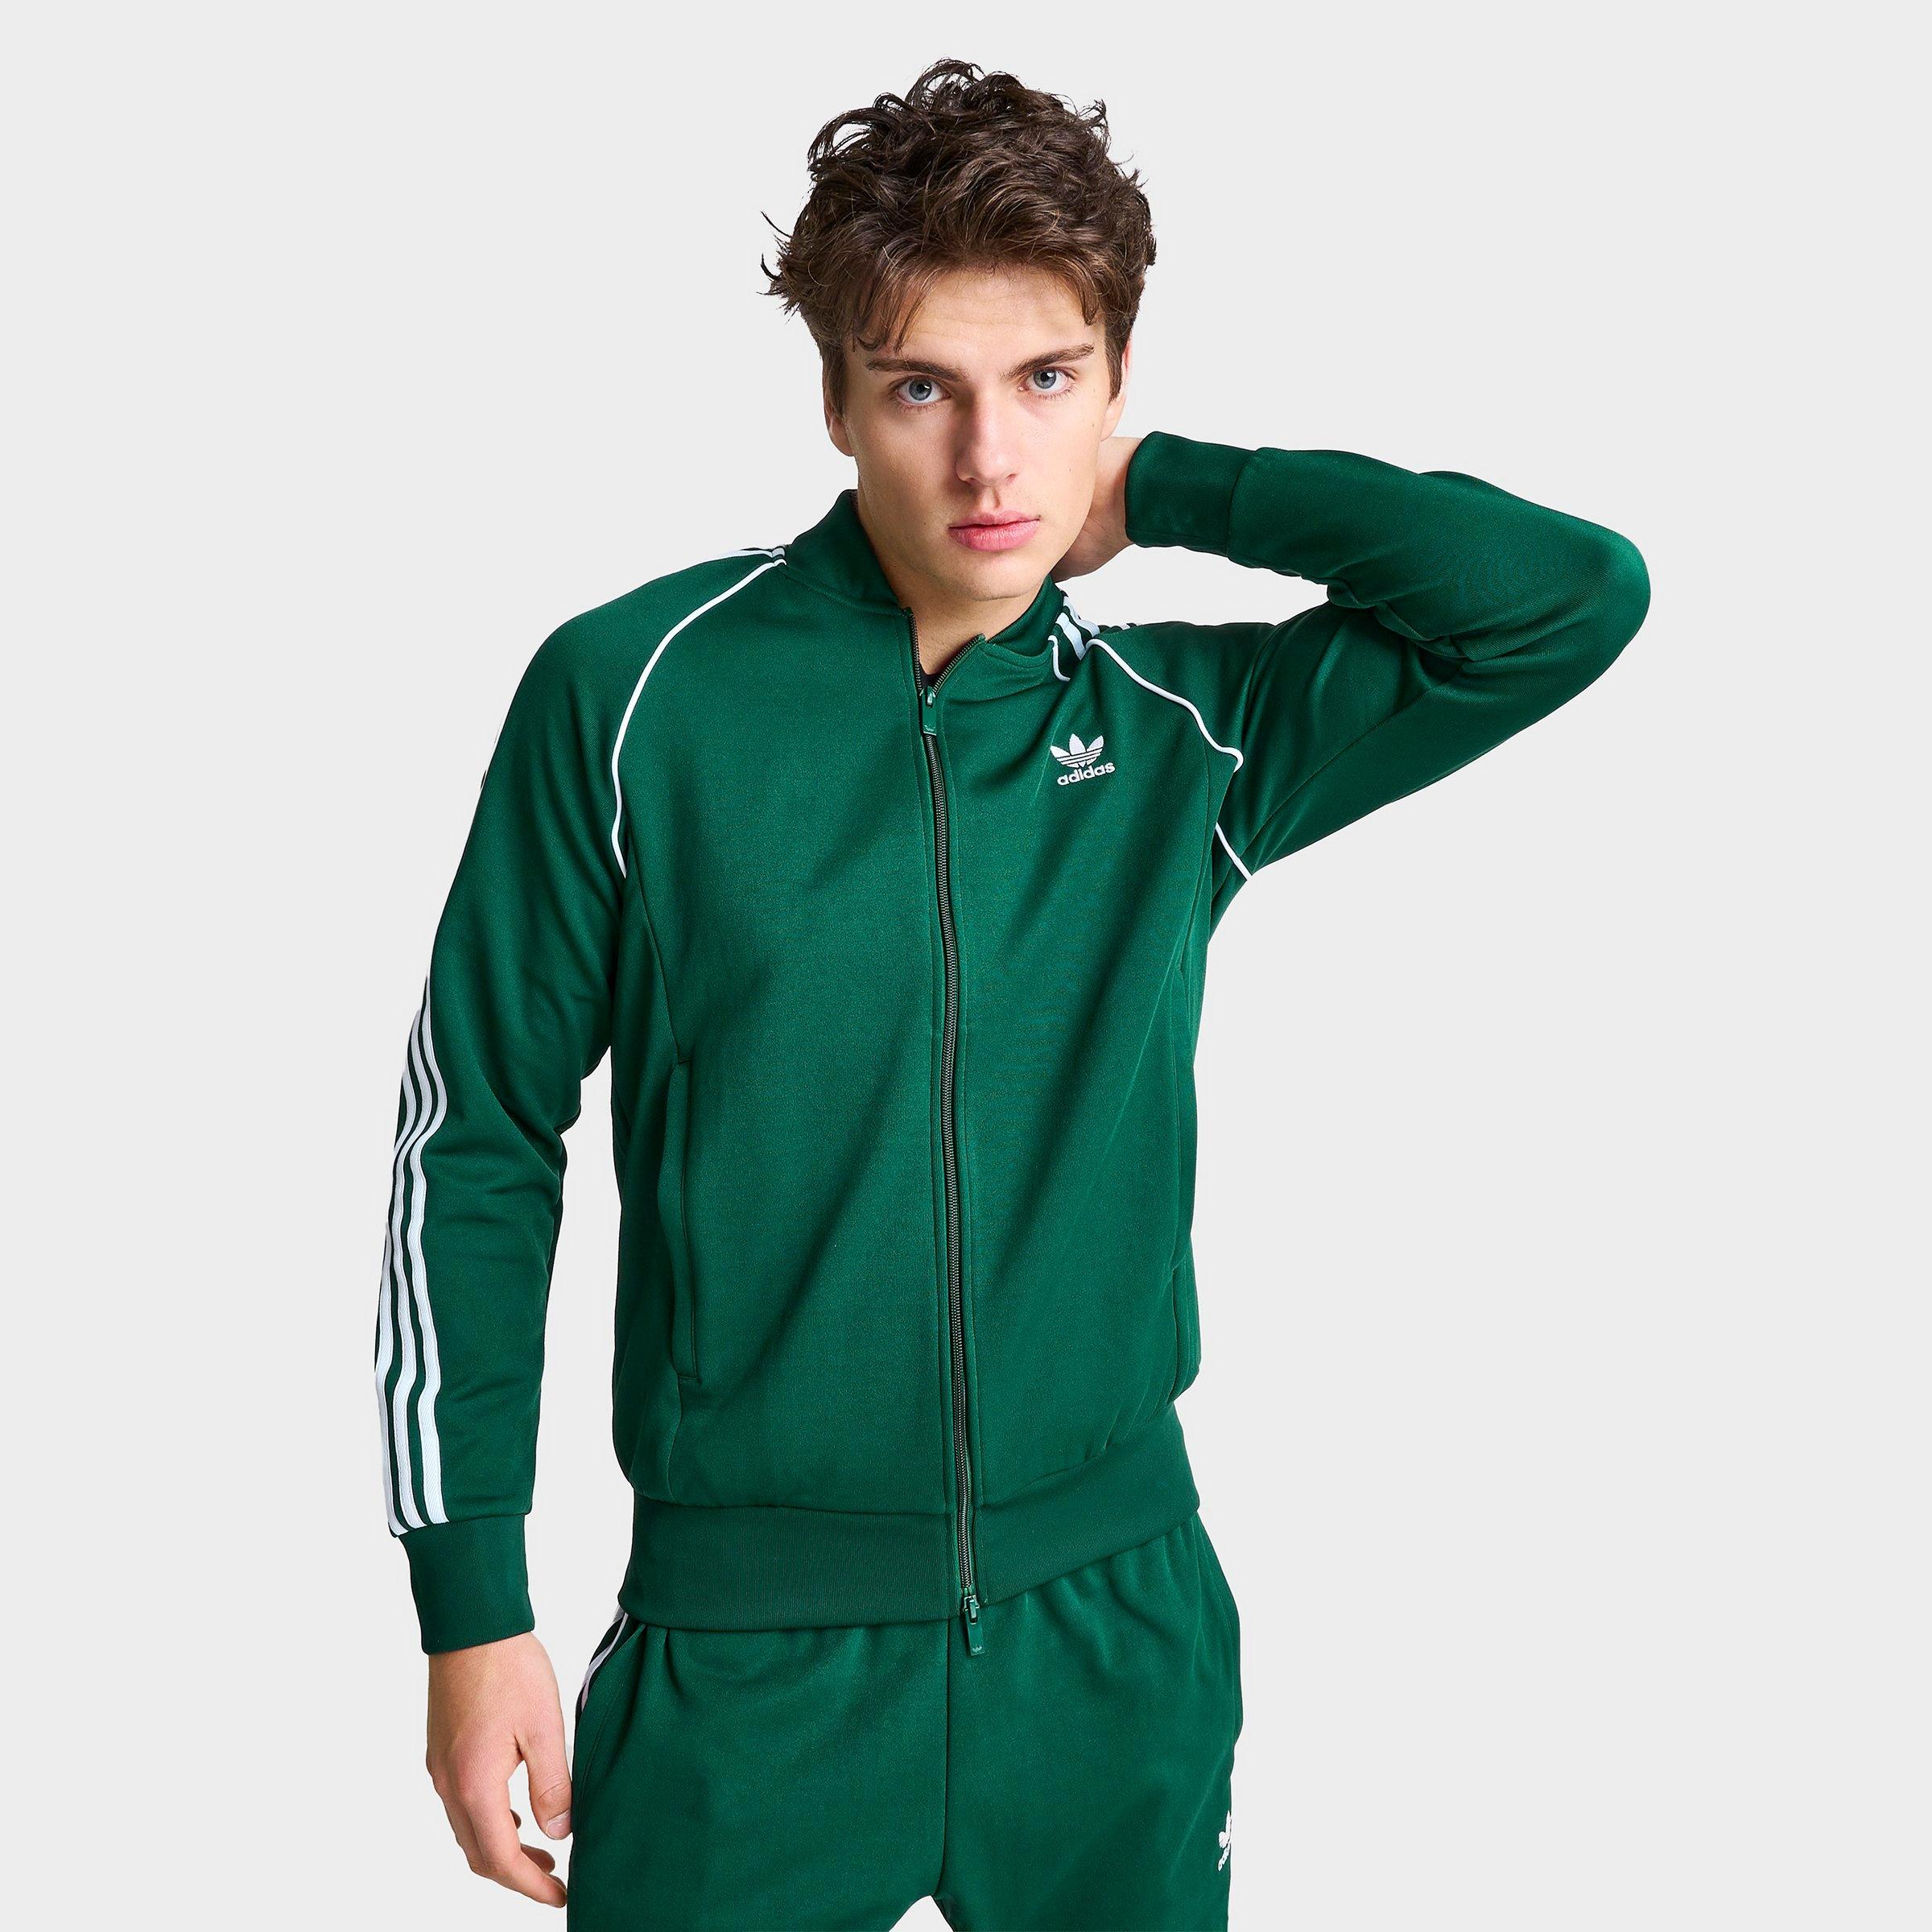 Adidas Originals Adidas Men's Originals Adicolor Classics Superstar Lifestyle Track Jacket In Collegiate Green